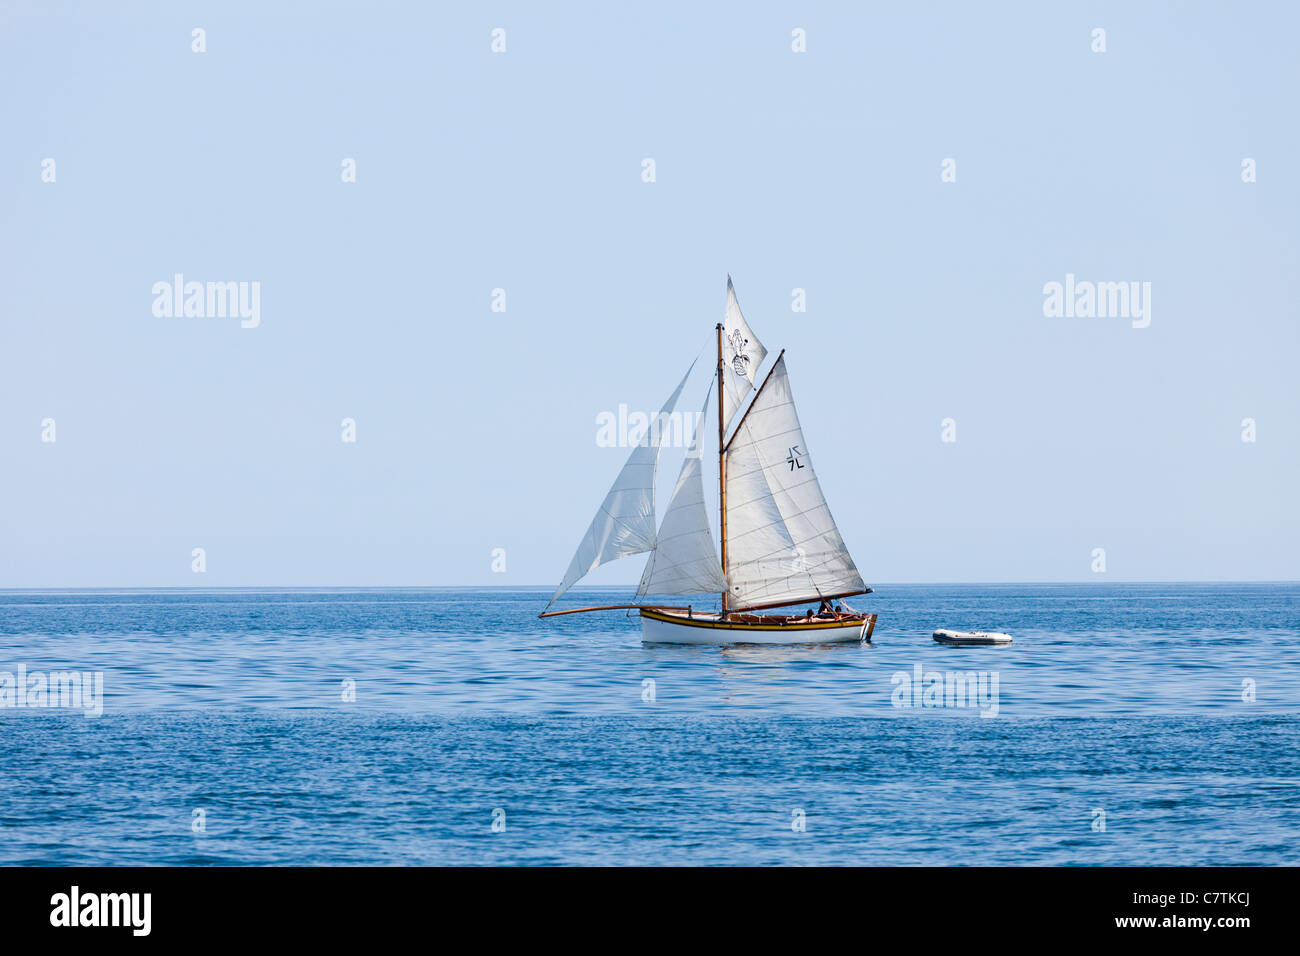 Une huître Falmouth Boat dans les eaux calmes de la baie de Falmouth, Cornwall Banque D'Images